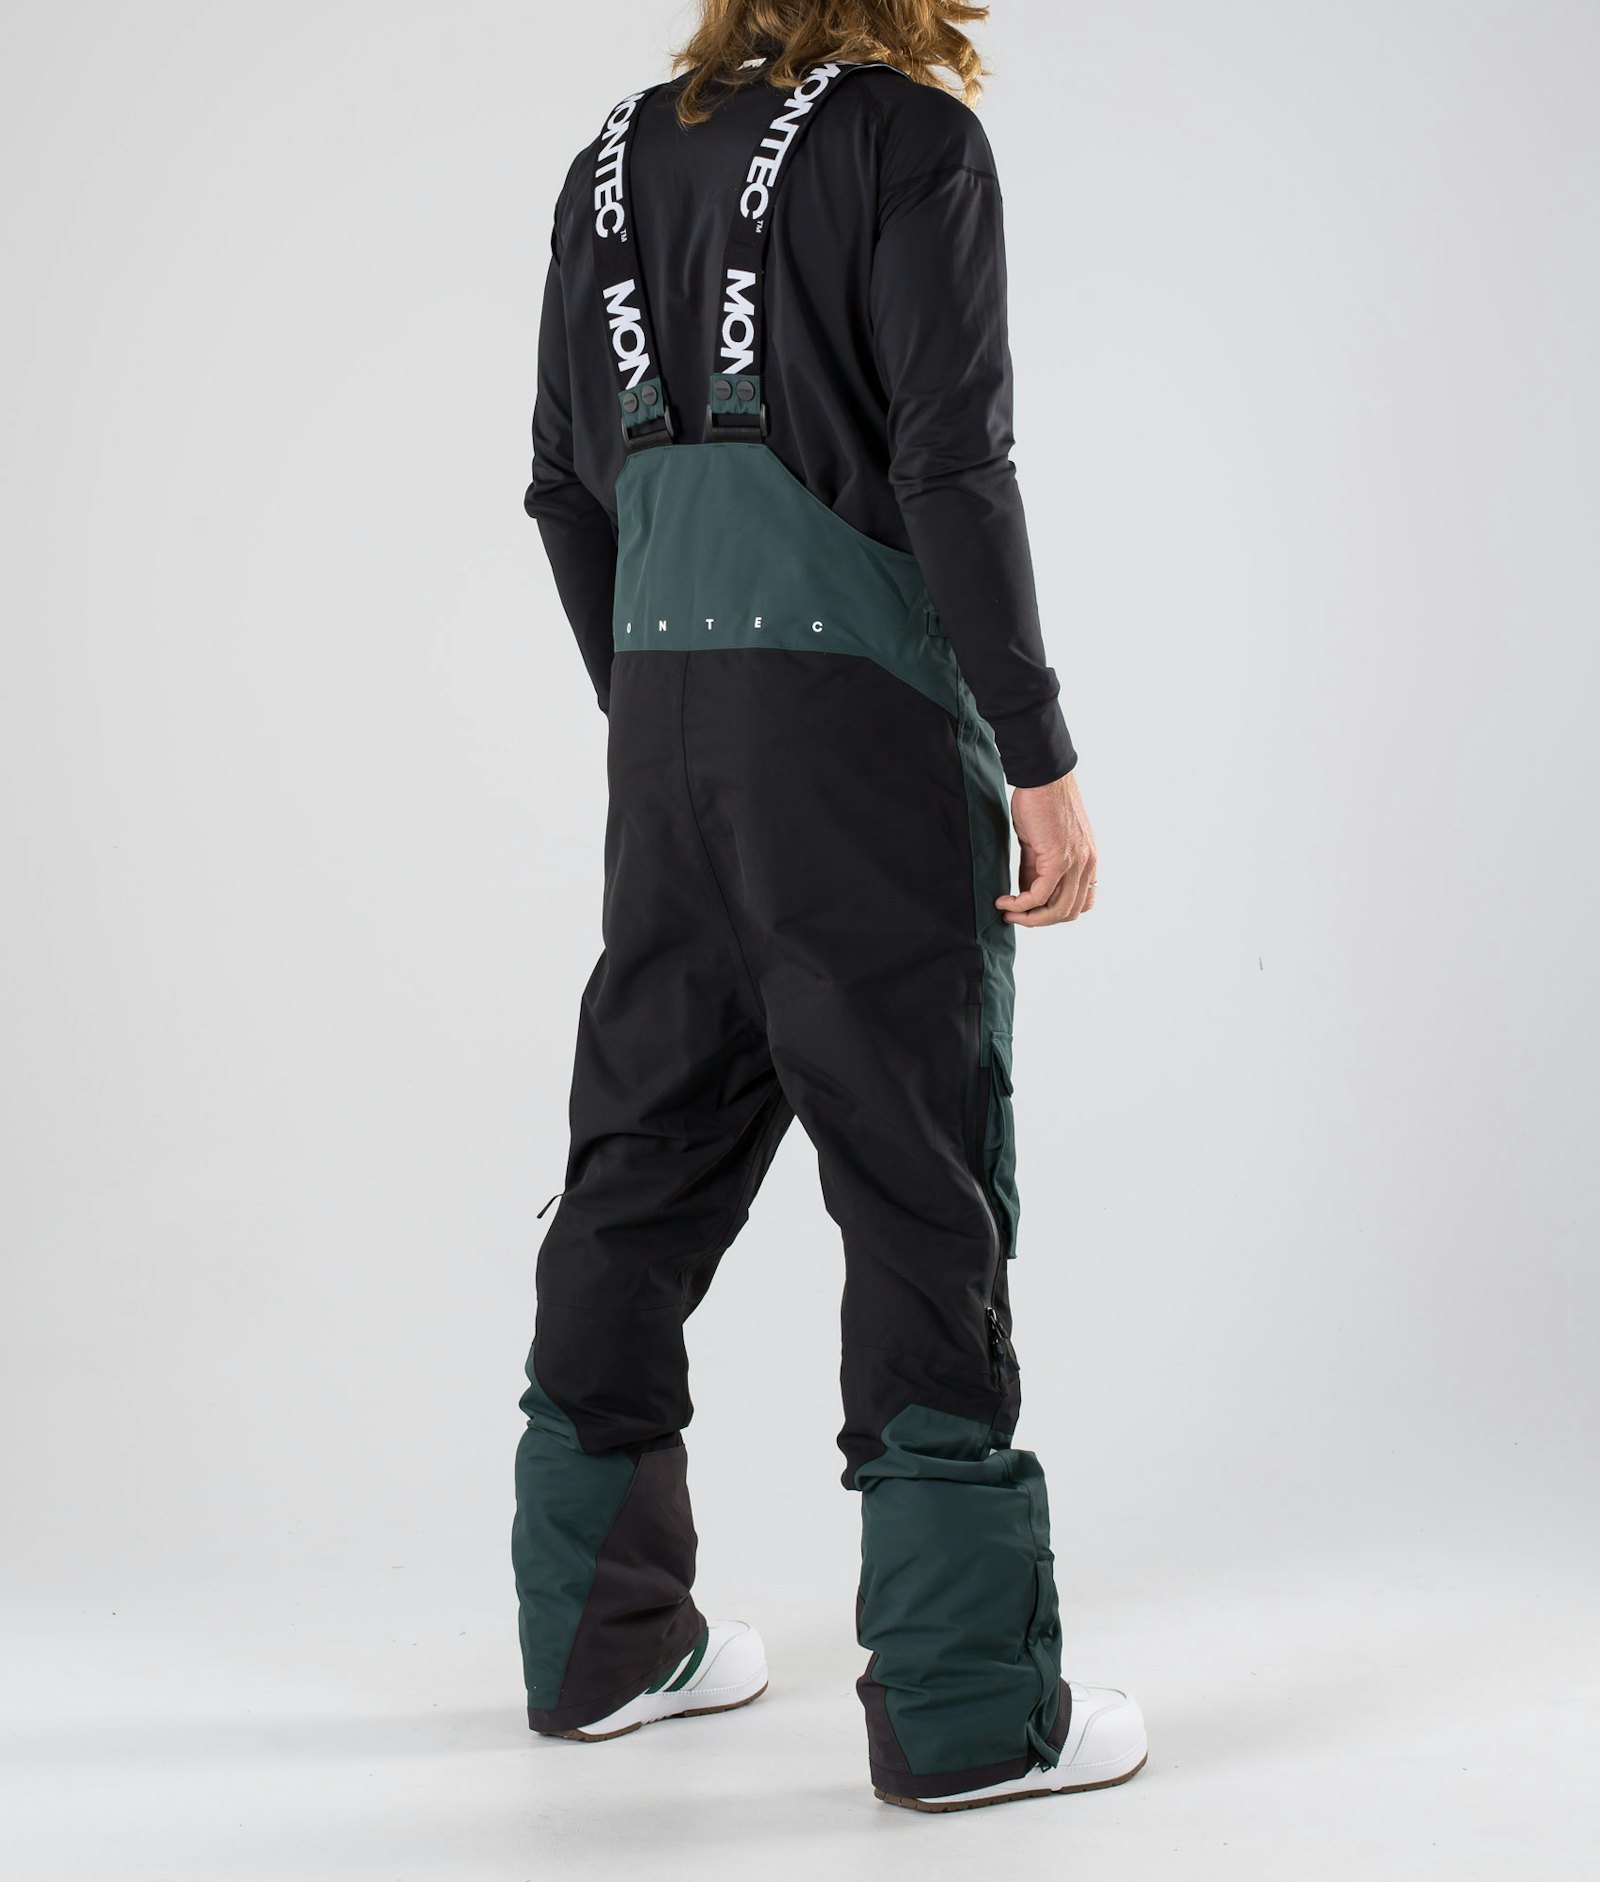 Fawk 2019 Spodnie Snowboardowe Mężczyźni Dark Atlantic/Black